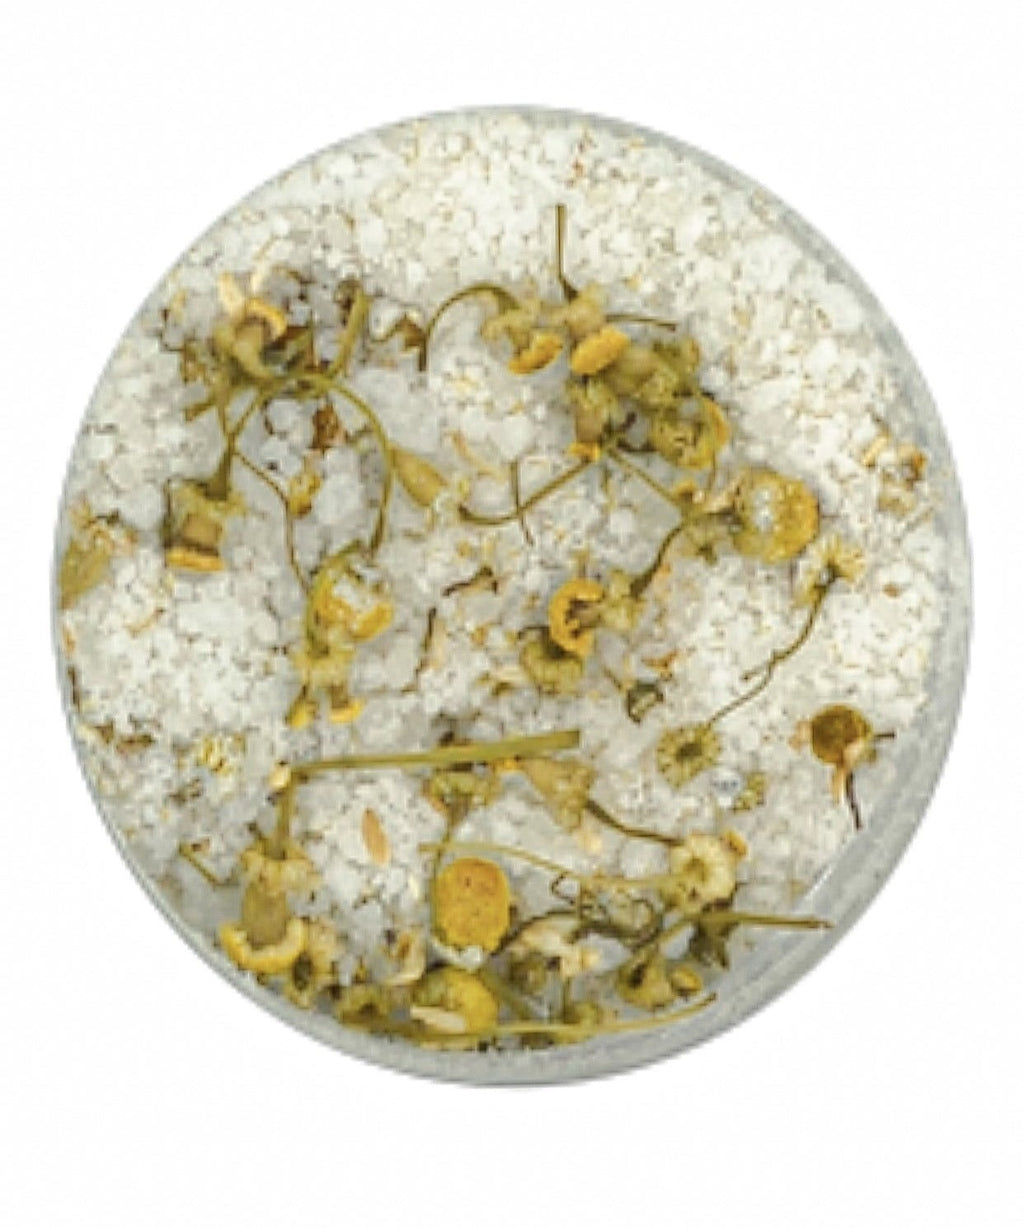 Chamomile Mineral-Infused Bath Tea Soak Detox